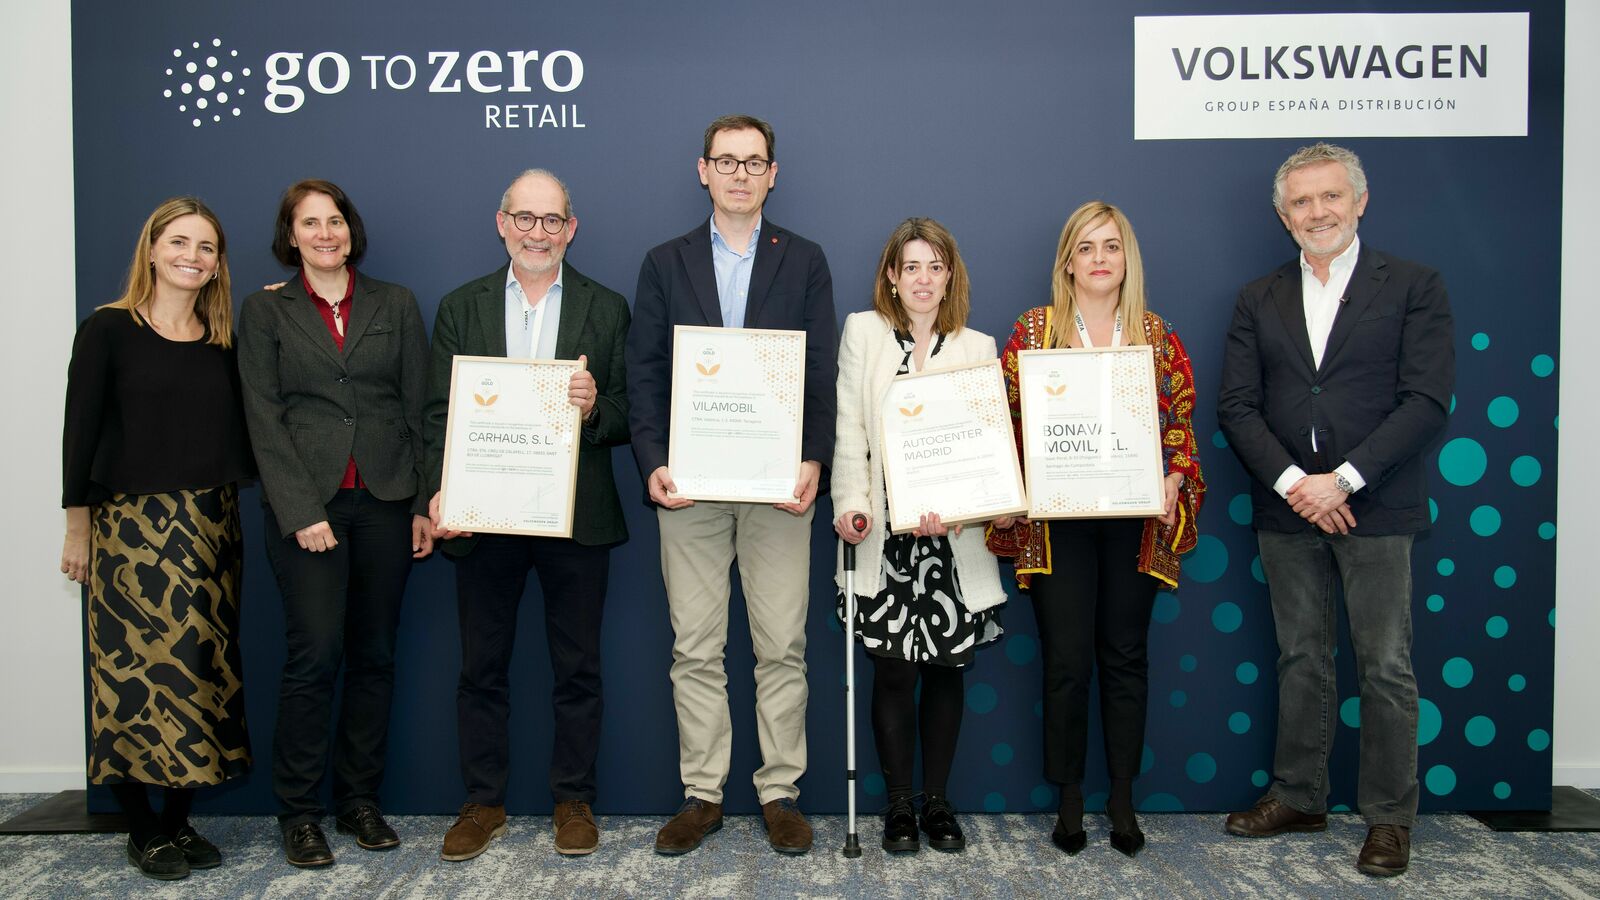 Gruppe von sechs Personen, die stolz Zertifikate vor einem 'Go to Zero Retail' Hintergrund des Volkswagen Konzerns präsentieren.